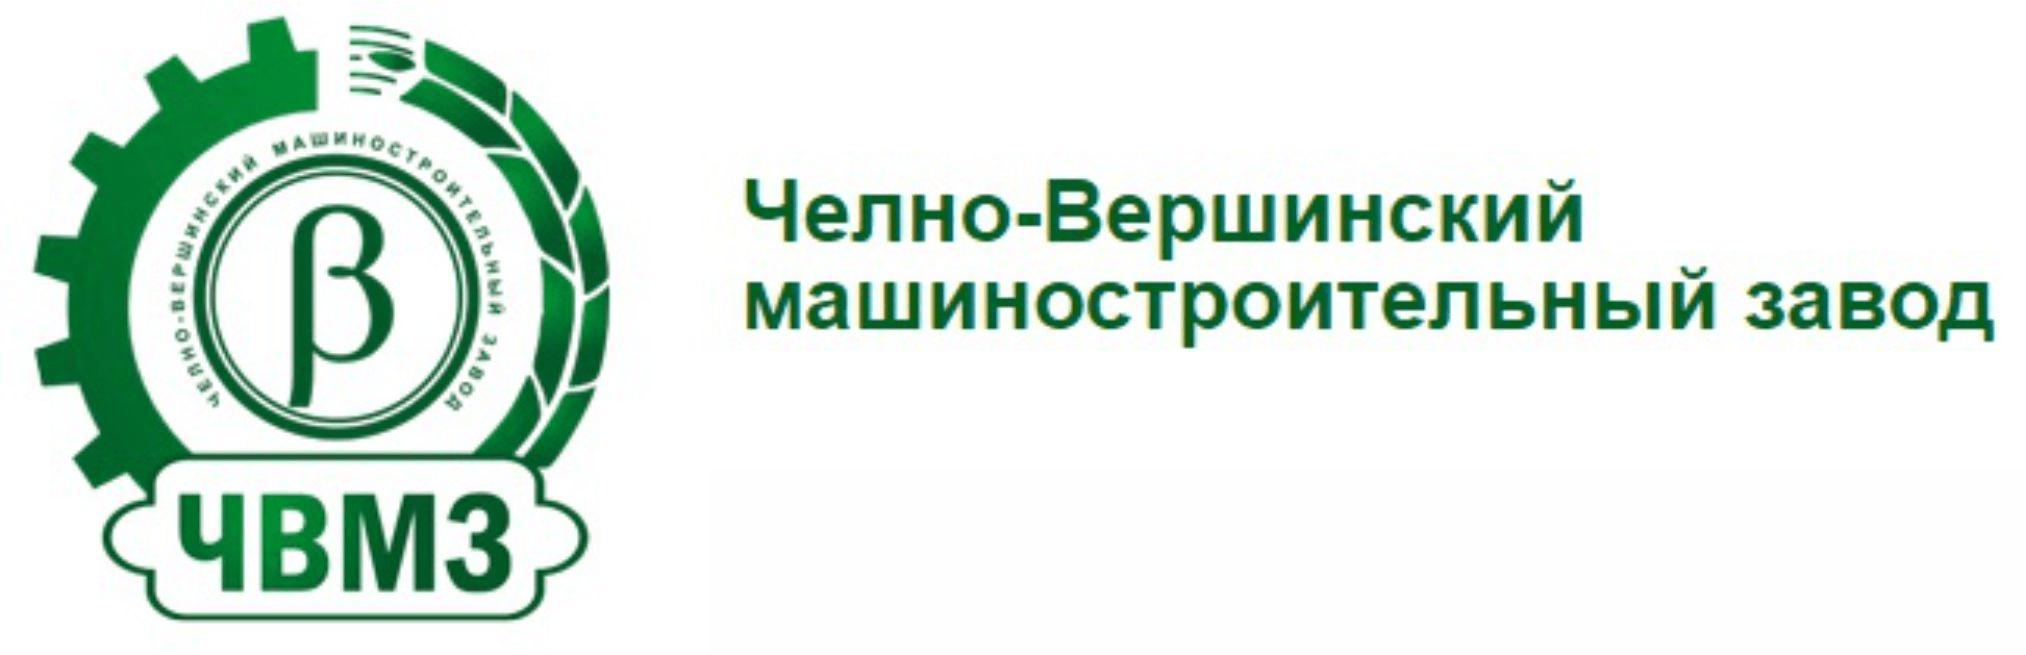 chelnovershinskijmashinostroitelwnyjzavod logo